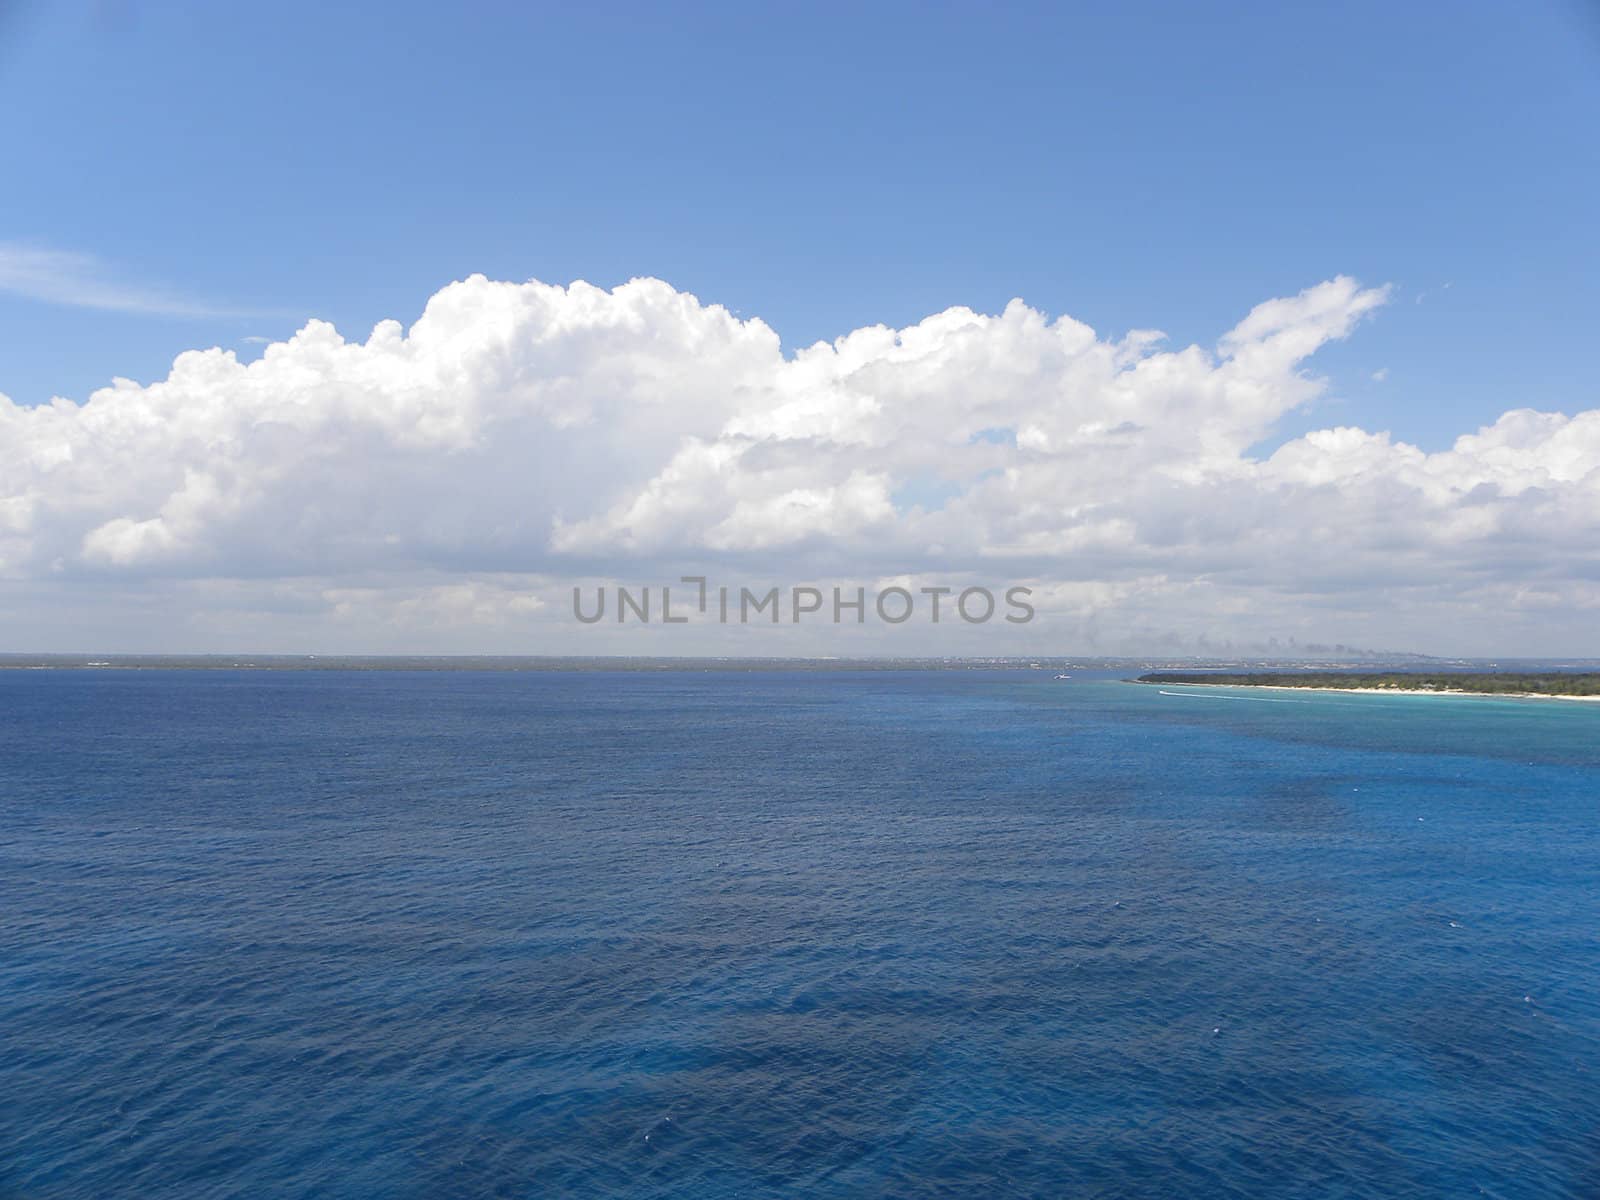      veduduta of a stretch of Caribbean Sea                          